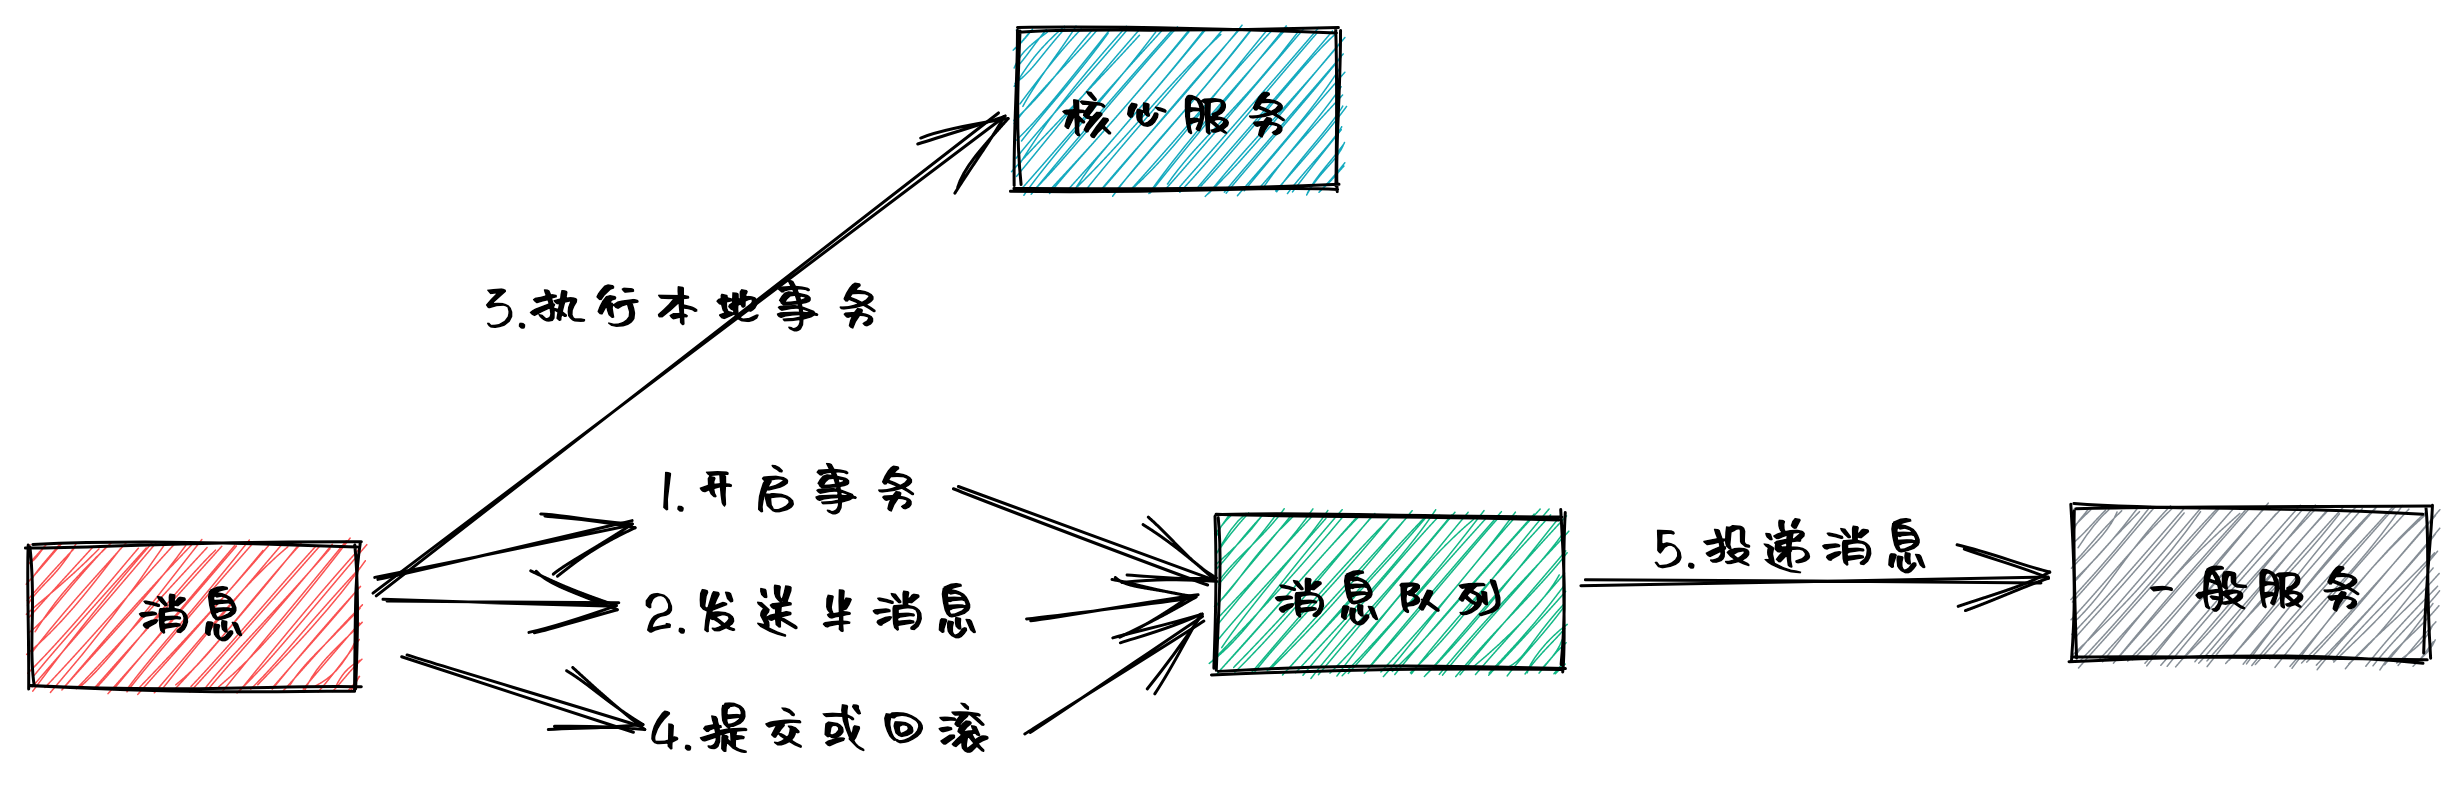 分布式事务模型.png